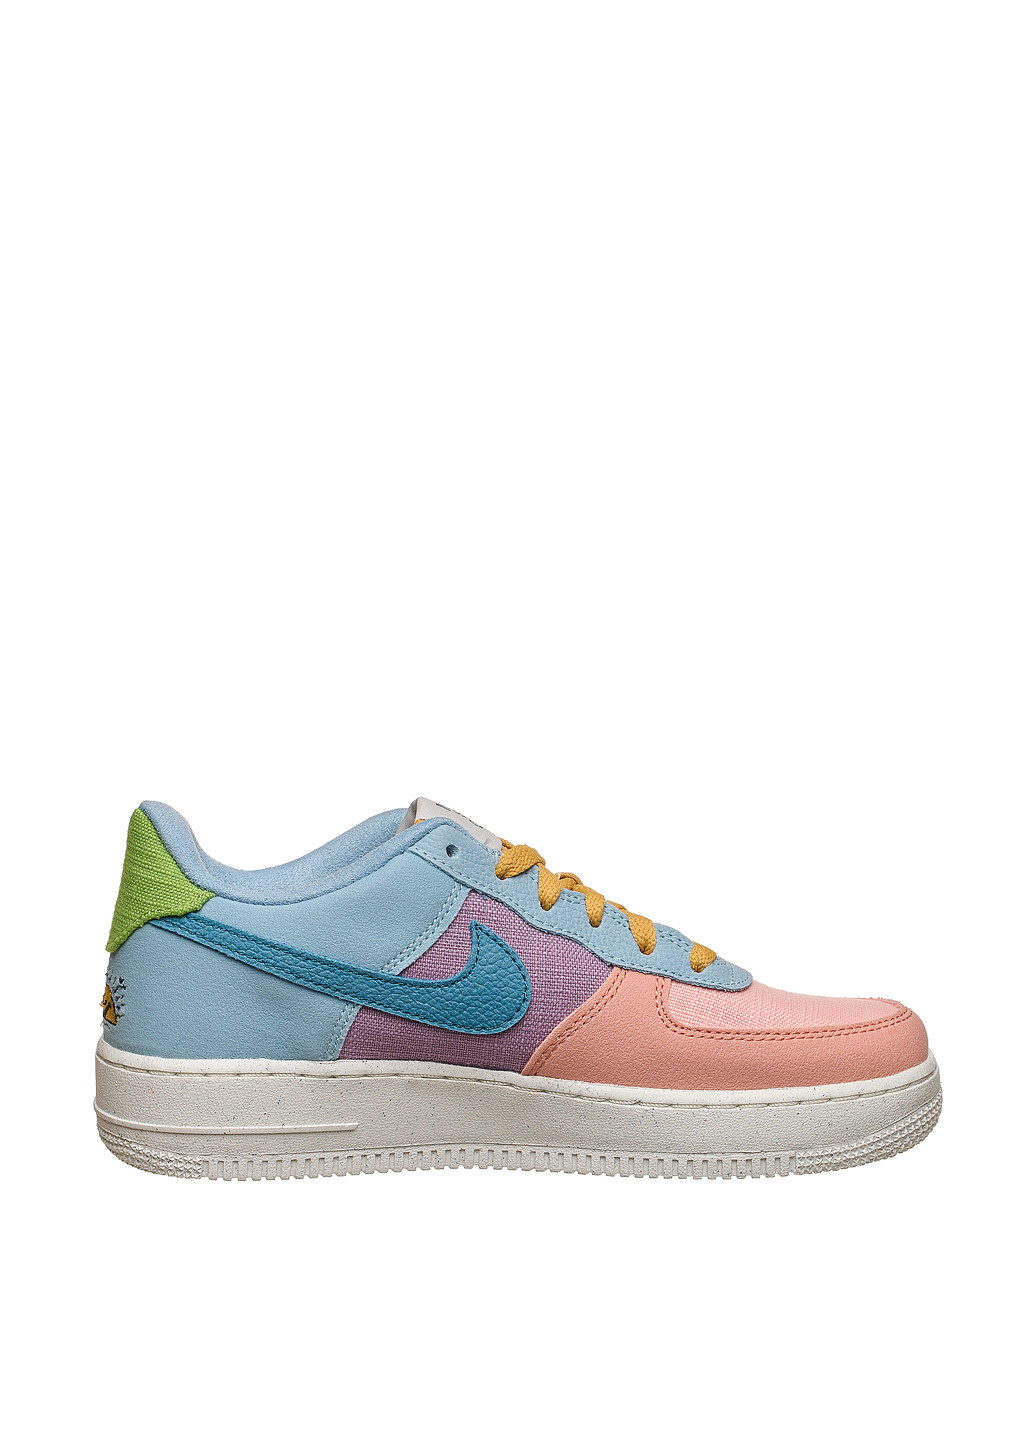 Цветные демисезонные кроссовки dm0984-700_2024 Nike Air Force 1 LV8 Next Nature Gs